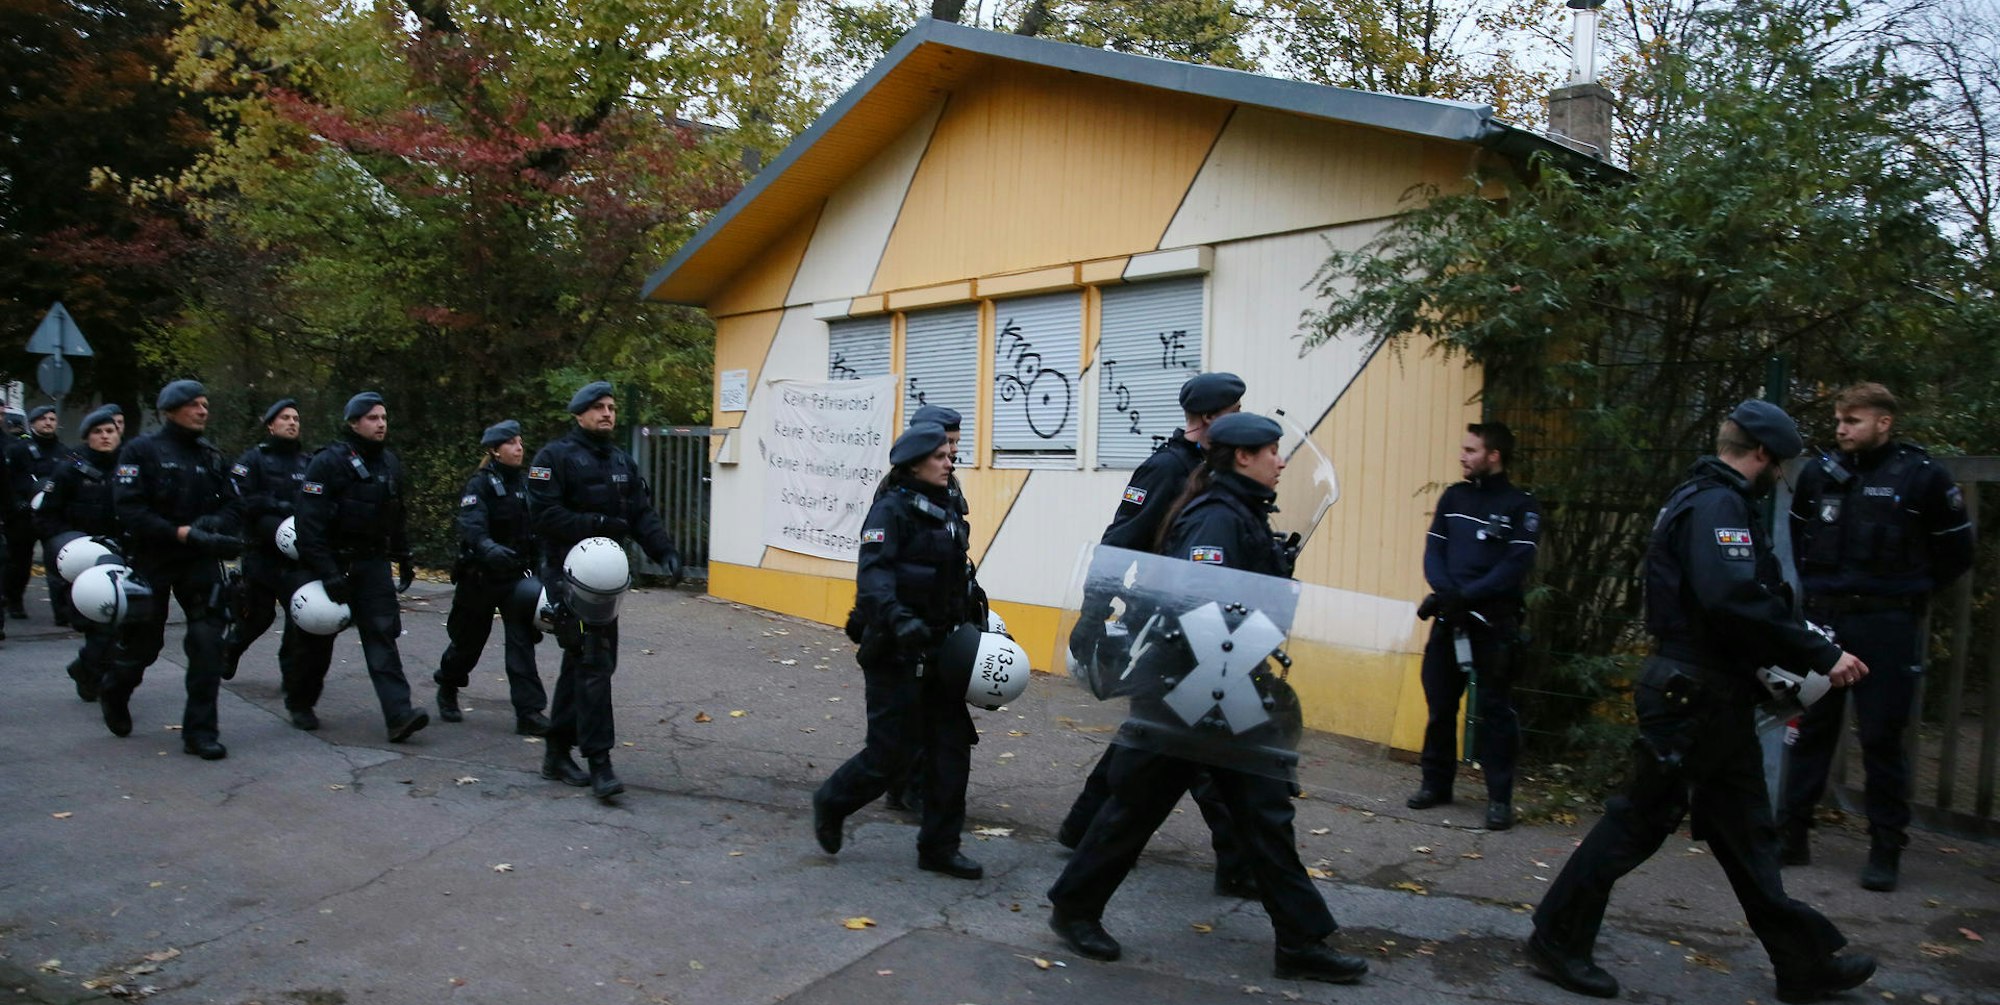 Polizisten räumen das besetzte Gebäude in Nippes.